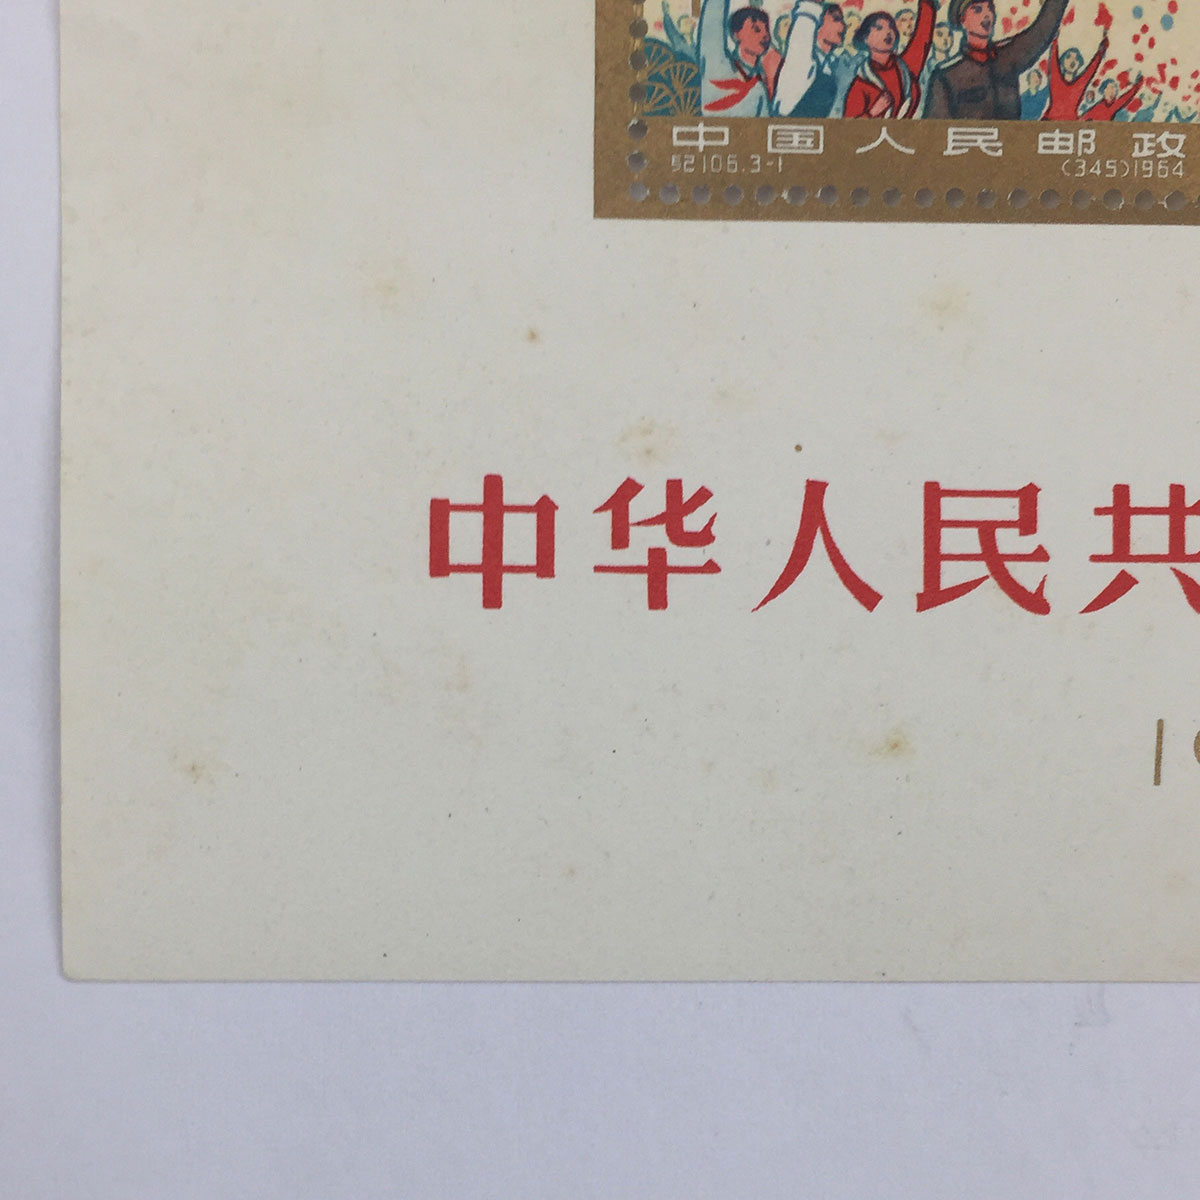 中国切手 中華人民共和国成立15周年小型シート消印あり 紀106 1964年 